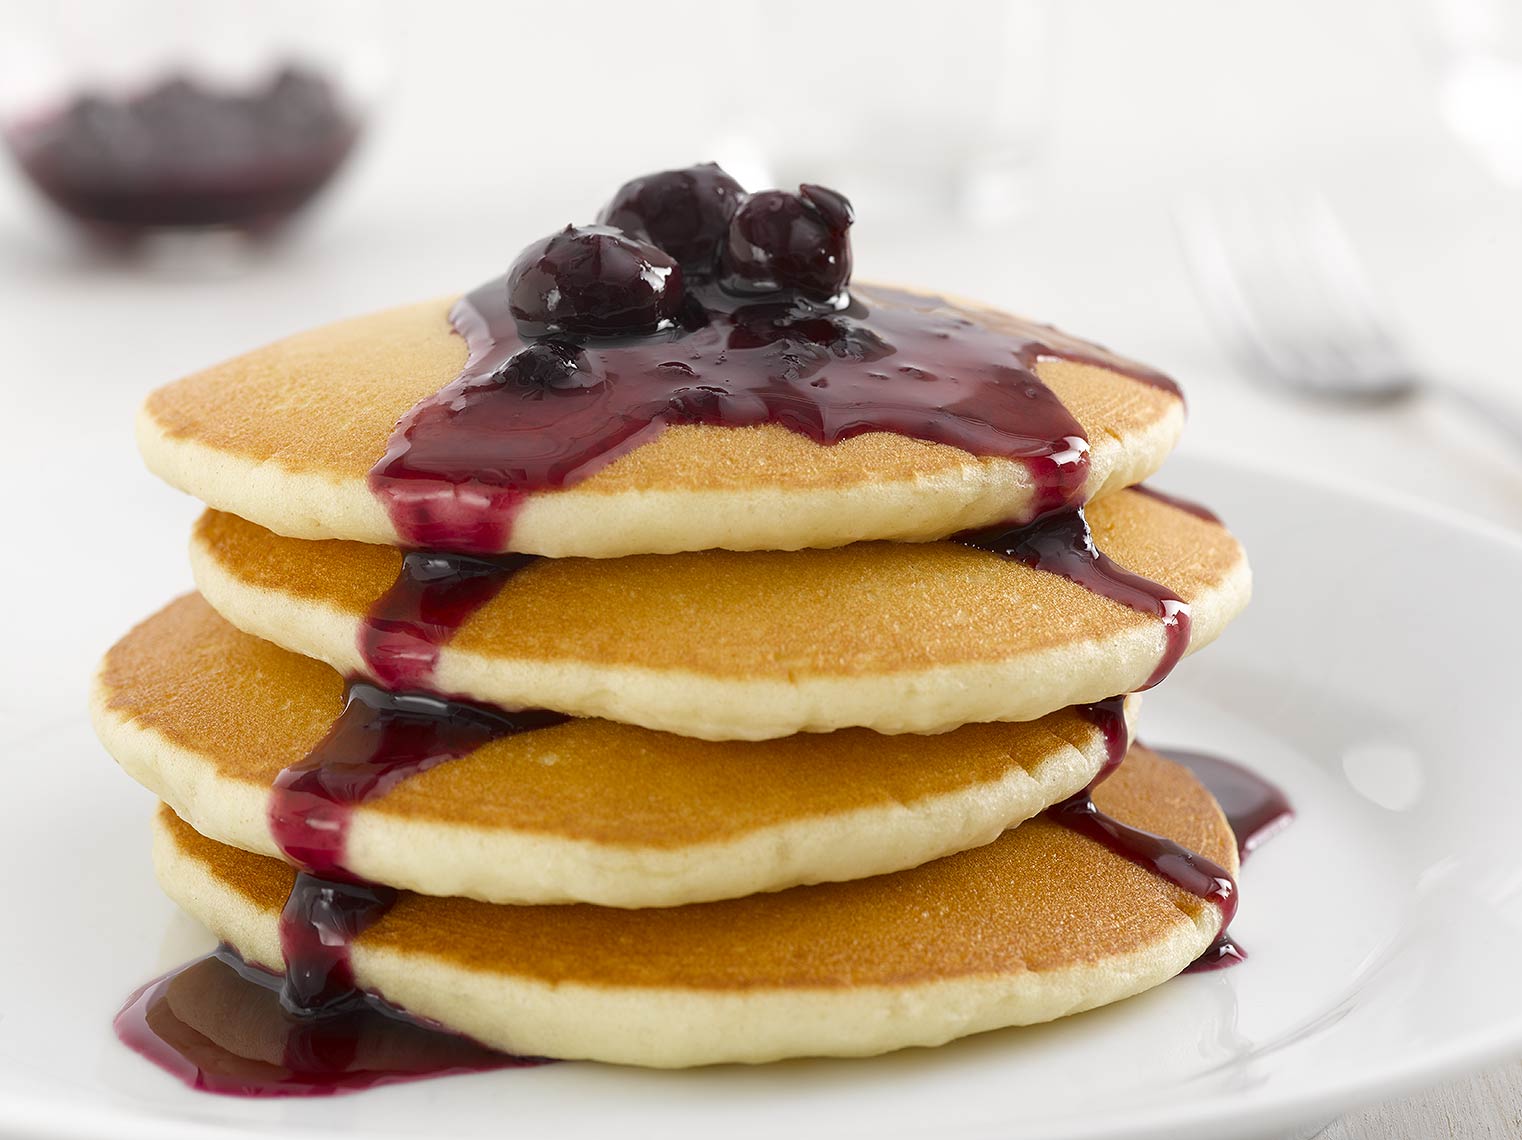 tauras_bublys_pancakes_blueberry